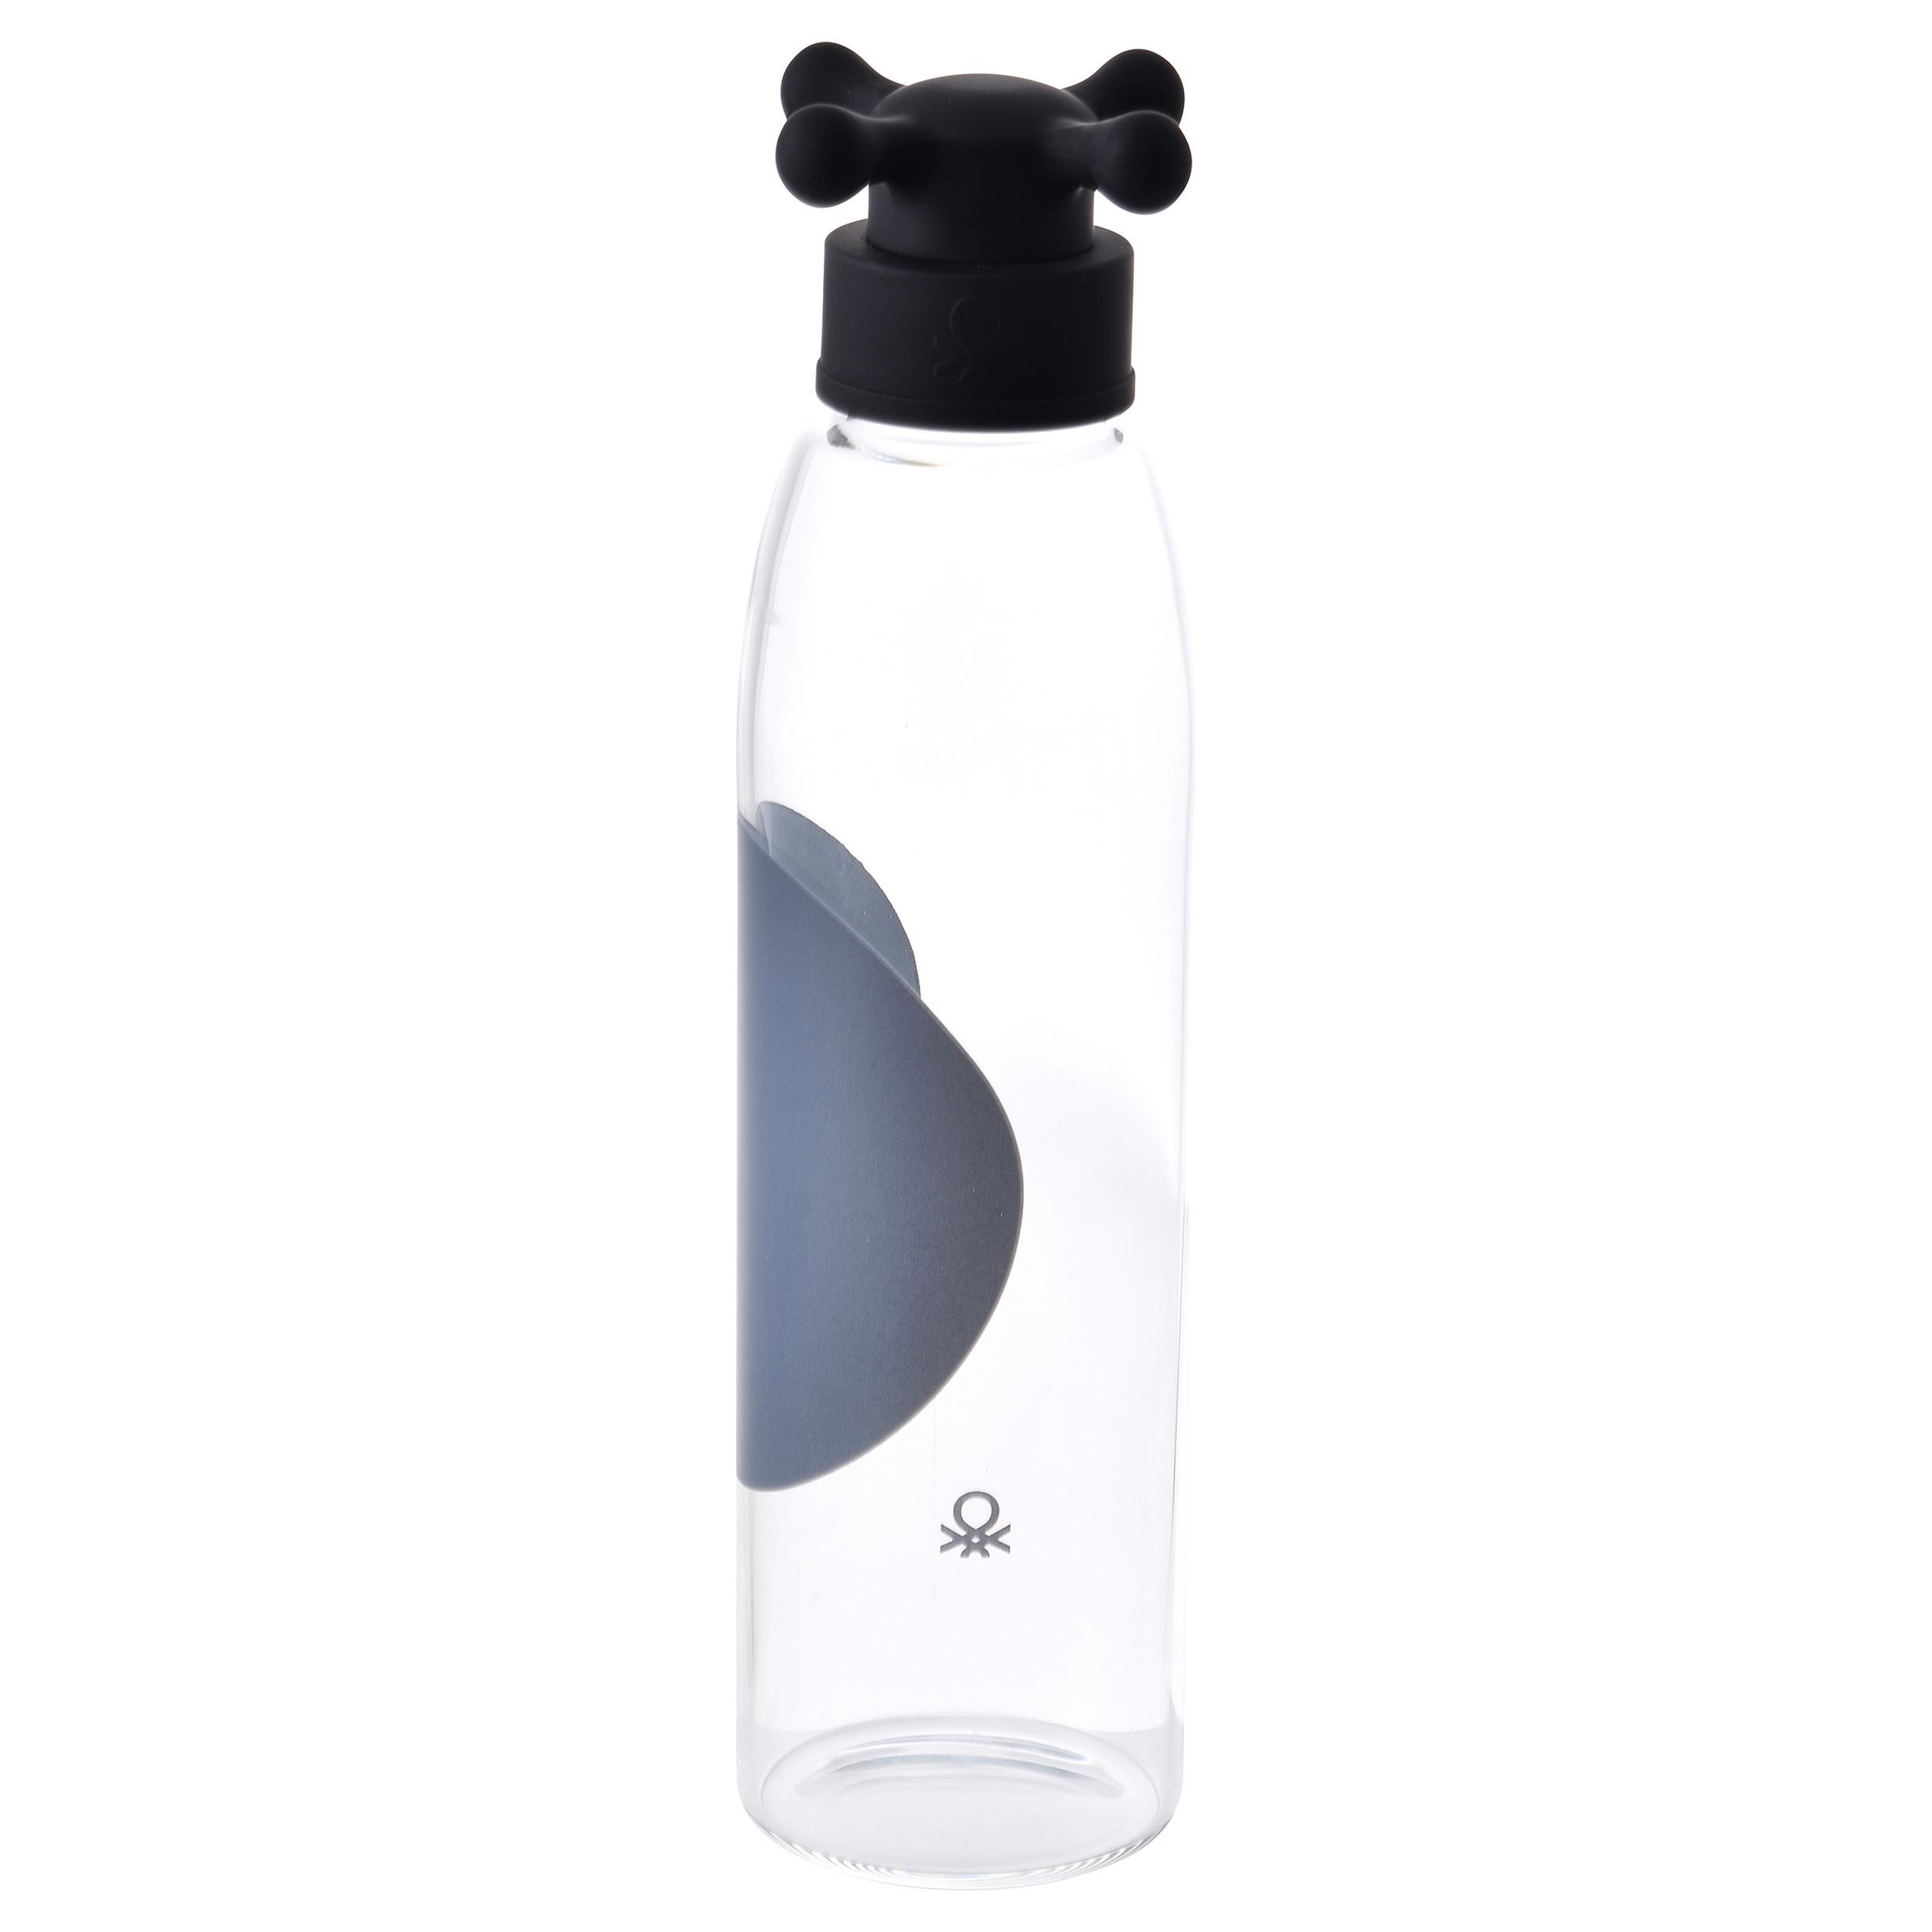 Trinkflasche Black & White 0,55 L Kunststoff/Glas - Transparent/Schwarz, Basics, Glas/Kunststoff (25,5/6,5/6,5cm) - Benetton